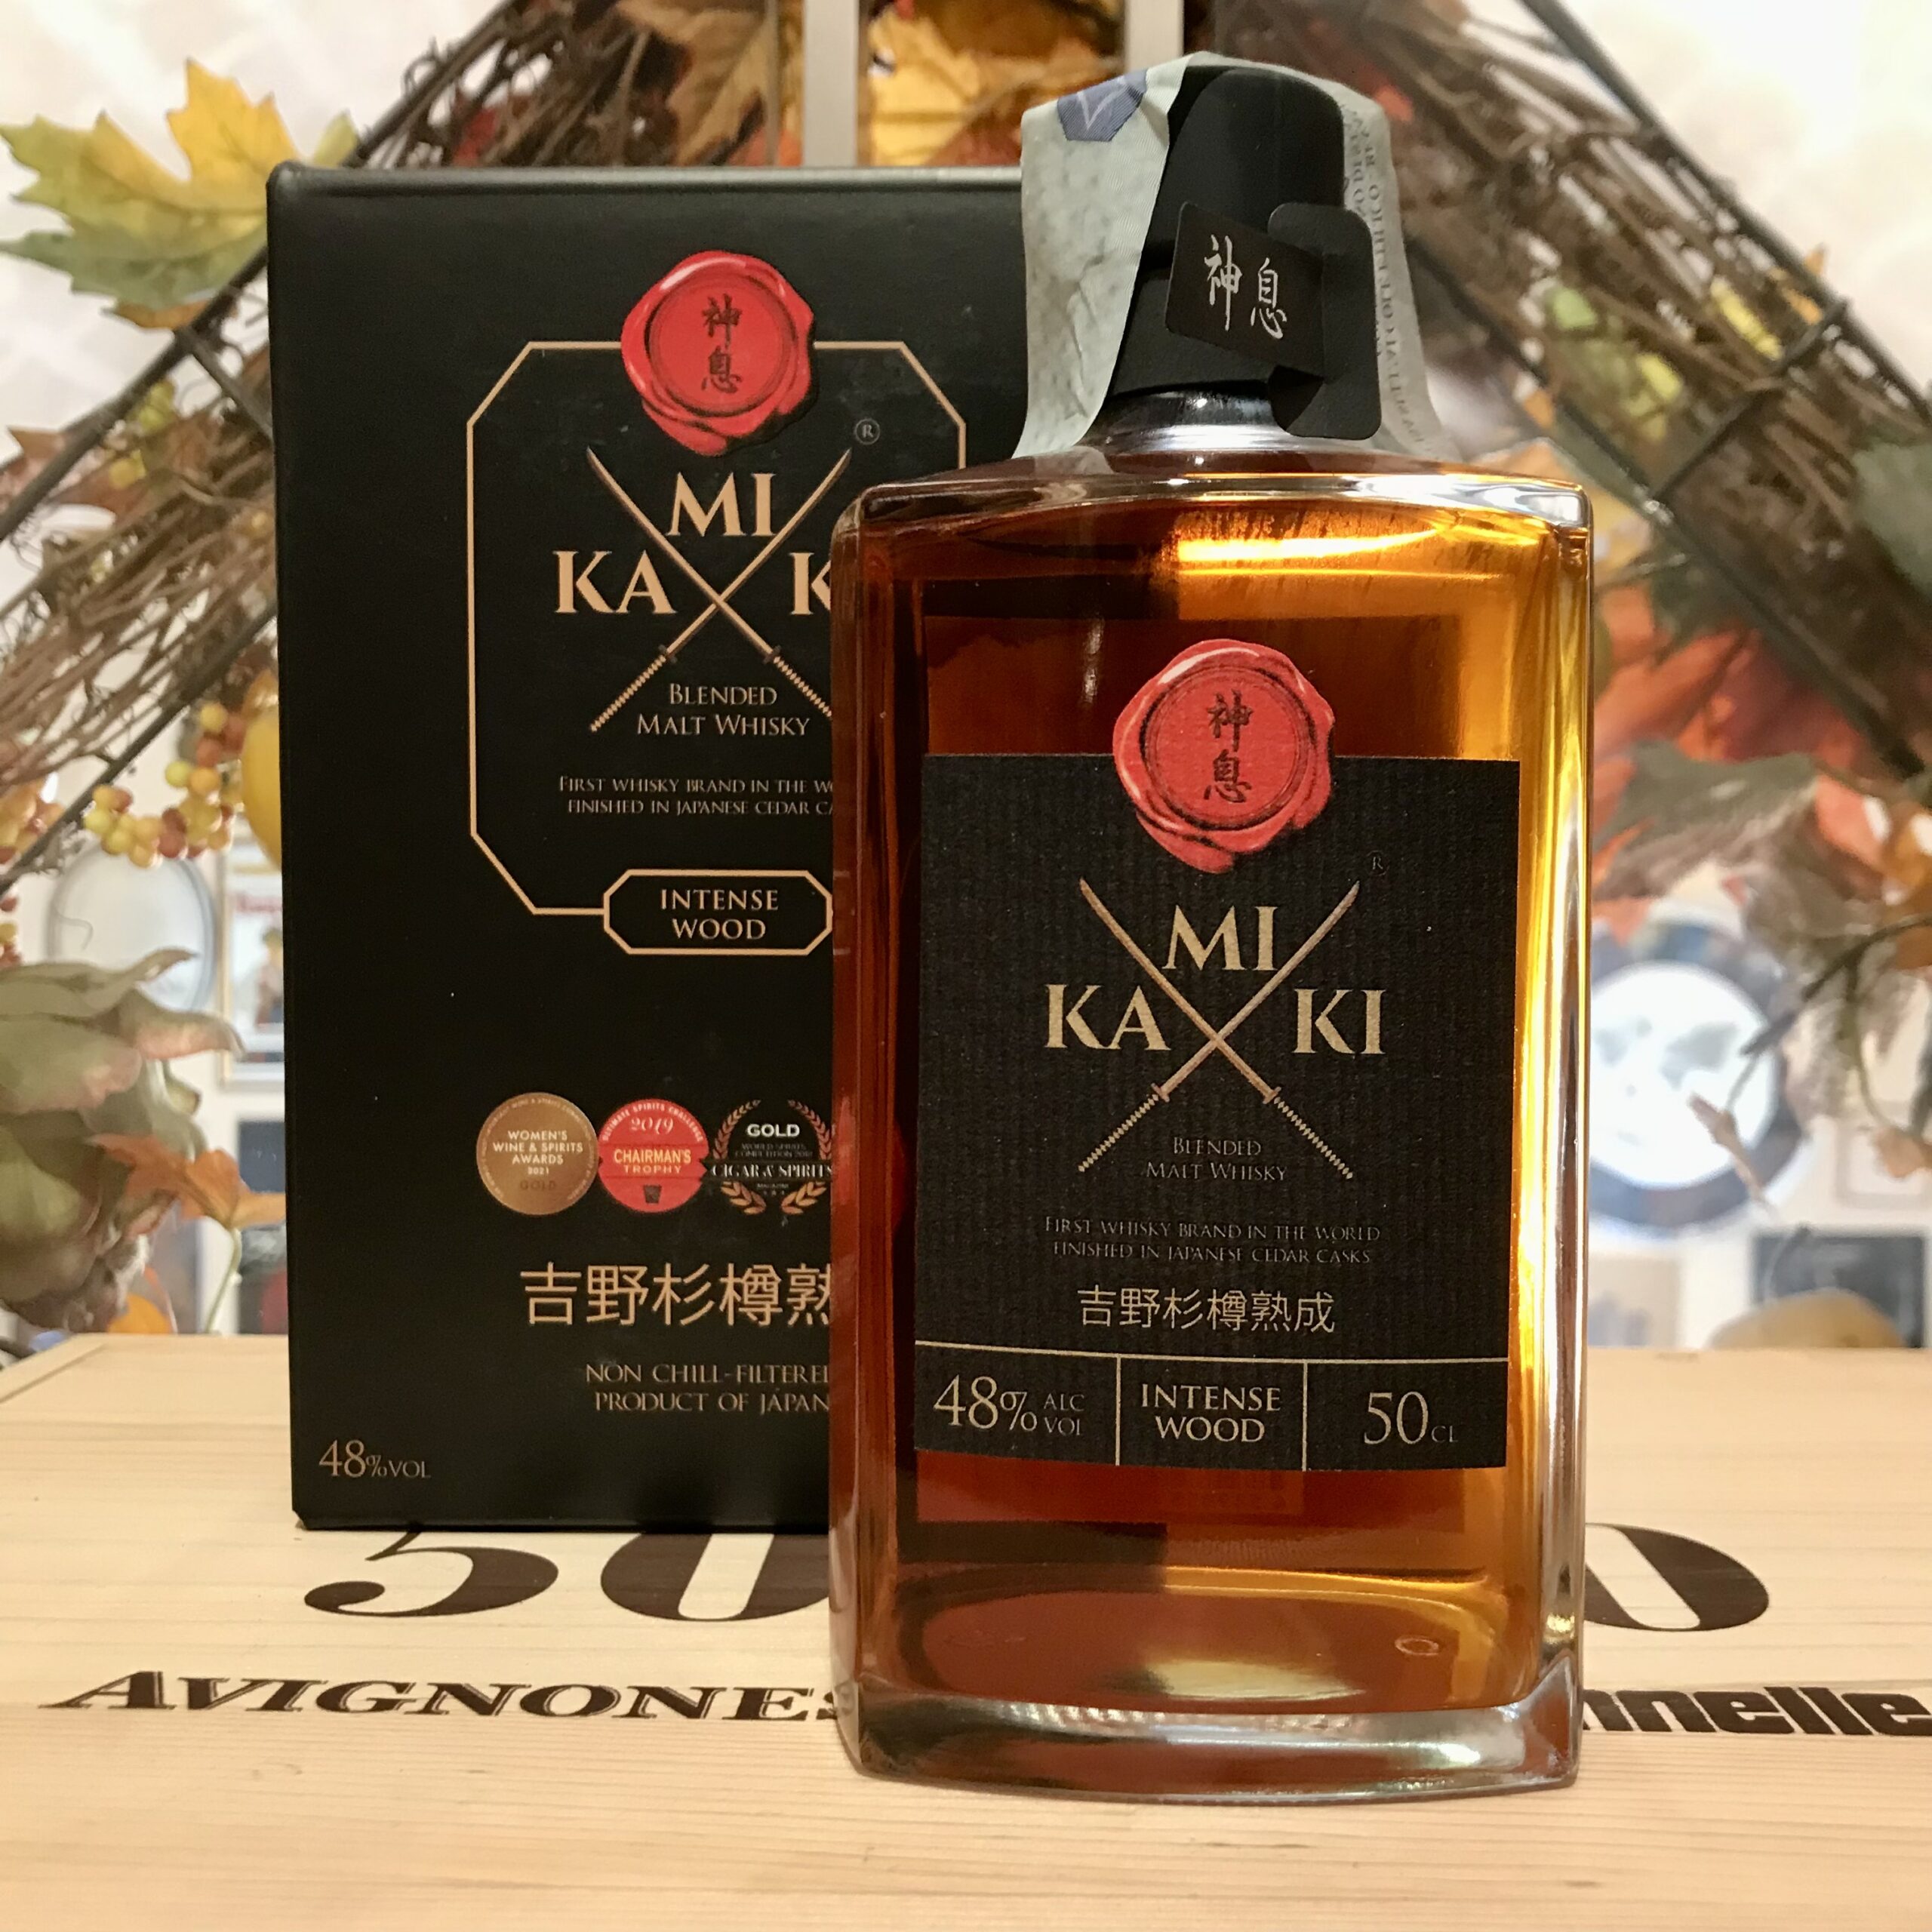 Kamiki Intense Wood Japanese Blended Malt Whisky